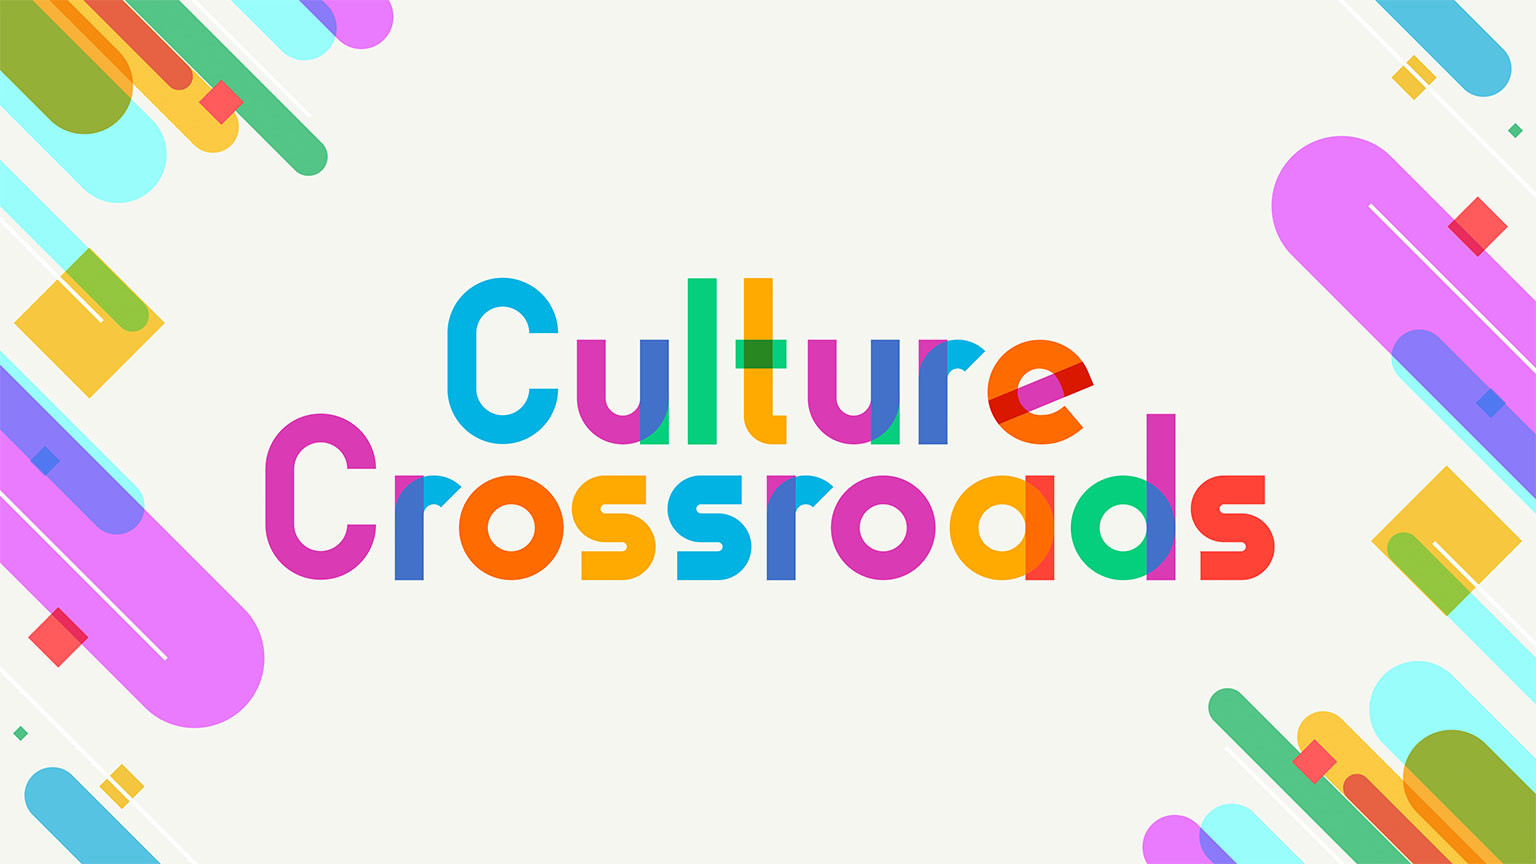 สีสันหลากวัฒนธรรม
Culture Crossroads